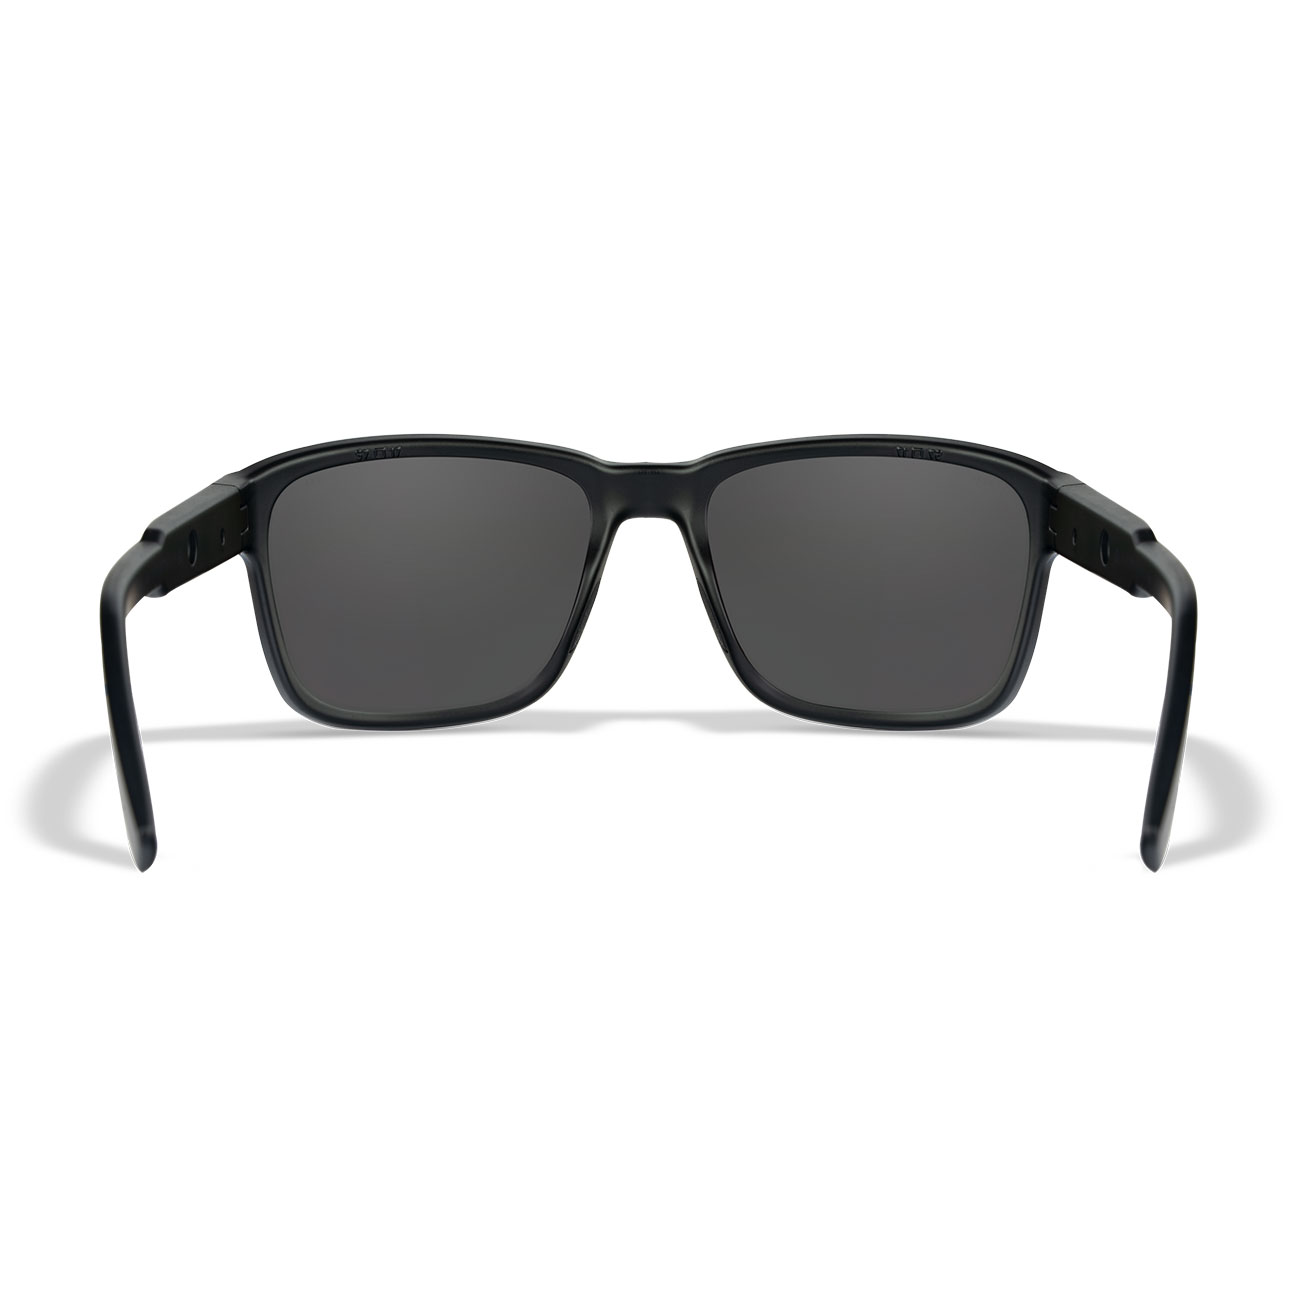 Wiley X Sonnenbrille Trek matt schwarz Glser grau inkl. Brillenetui und Seitenschutz Bild 3